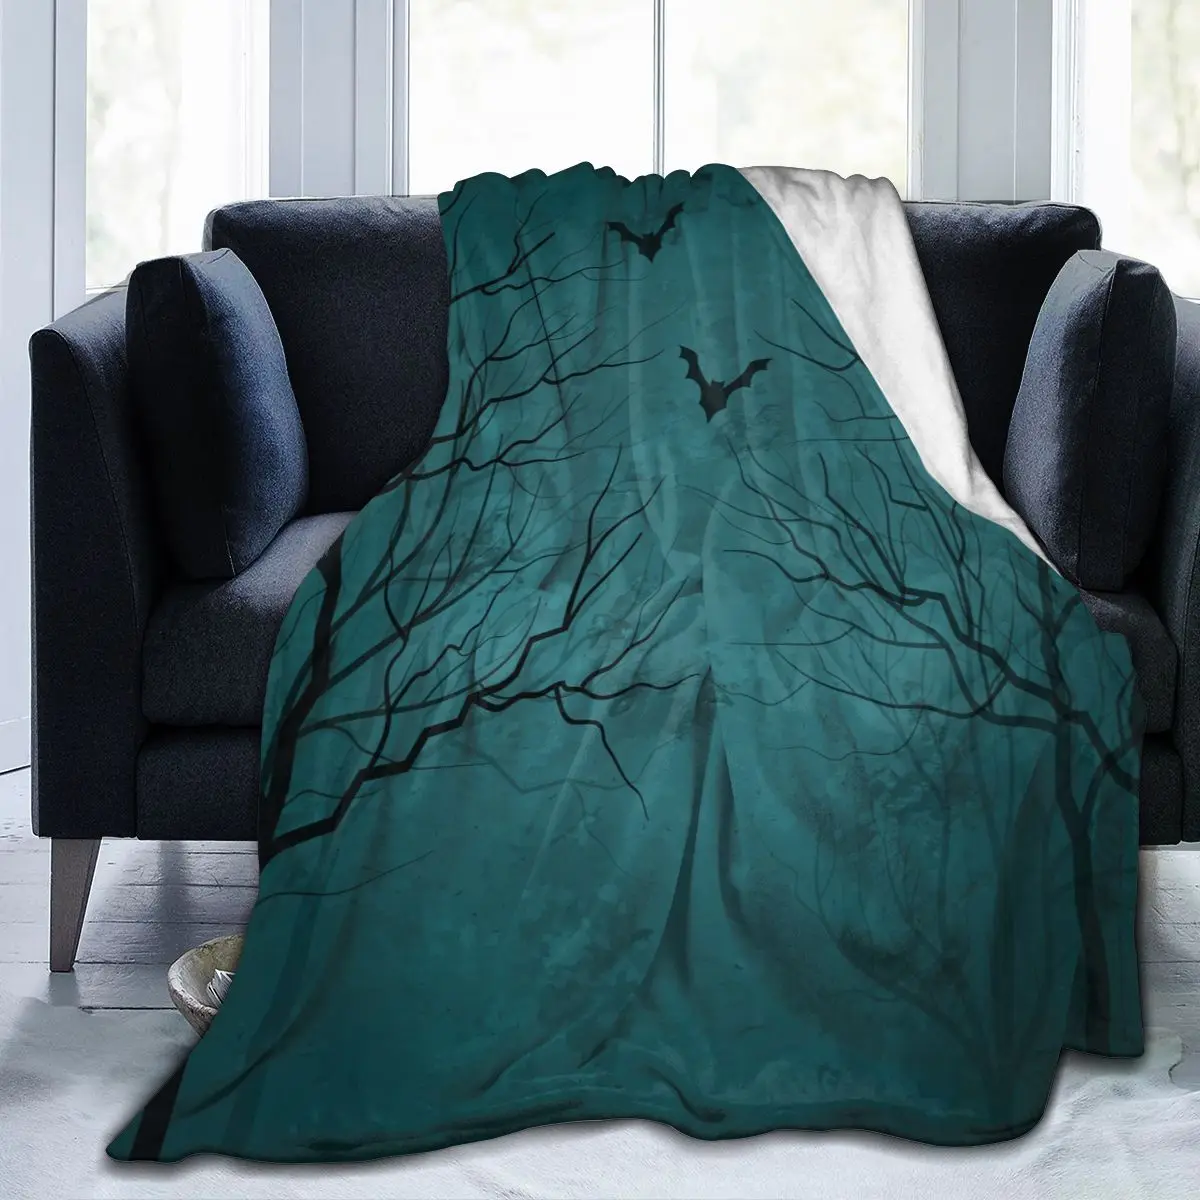 

Мягкое теплое фланелевое одеяло, страшные деревья с летучими мышами, переносное зимнее одеяло для путешествий, тонкое покрывало для кроват...